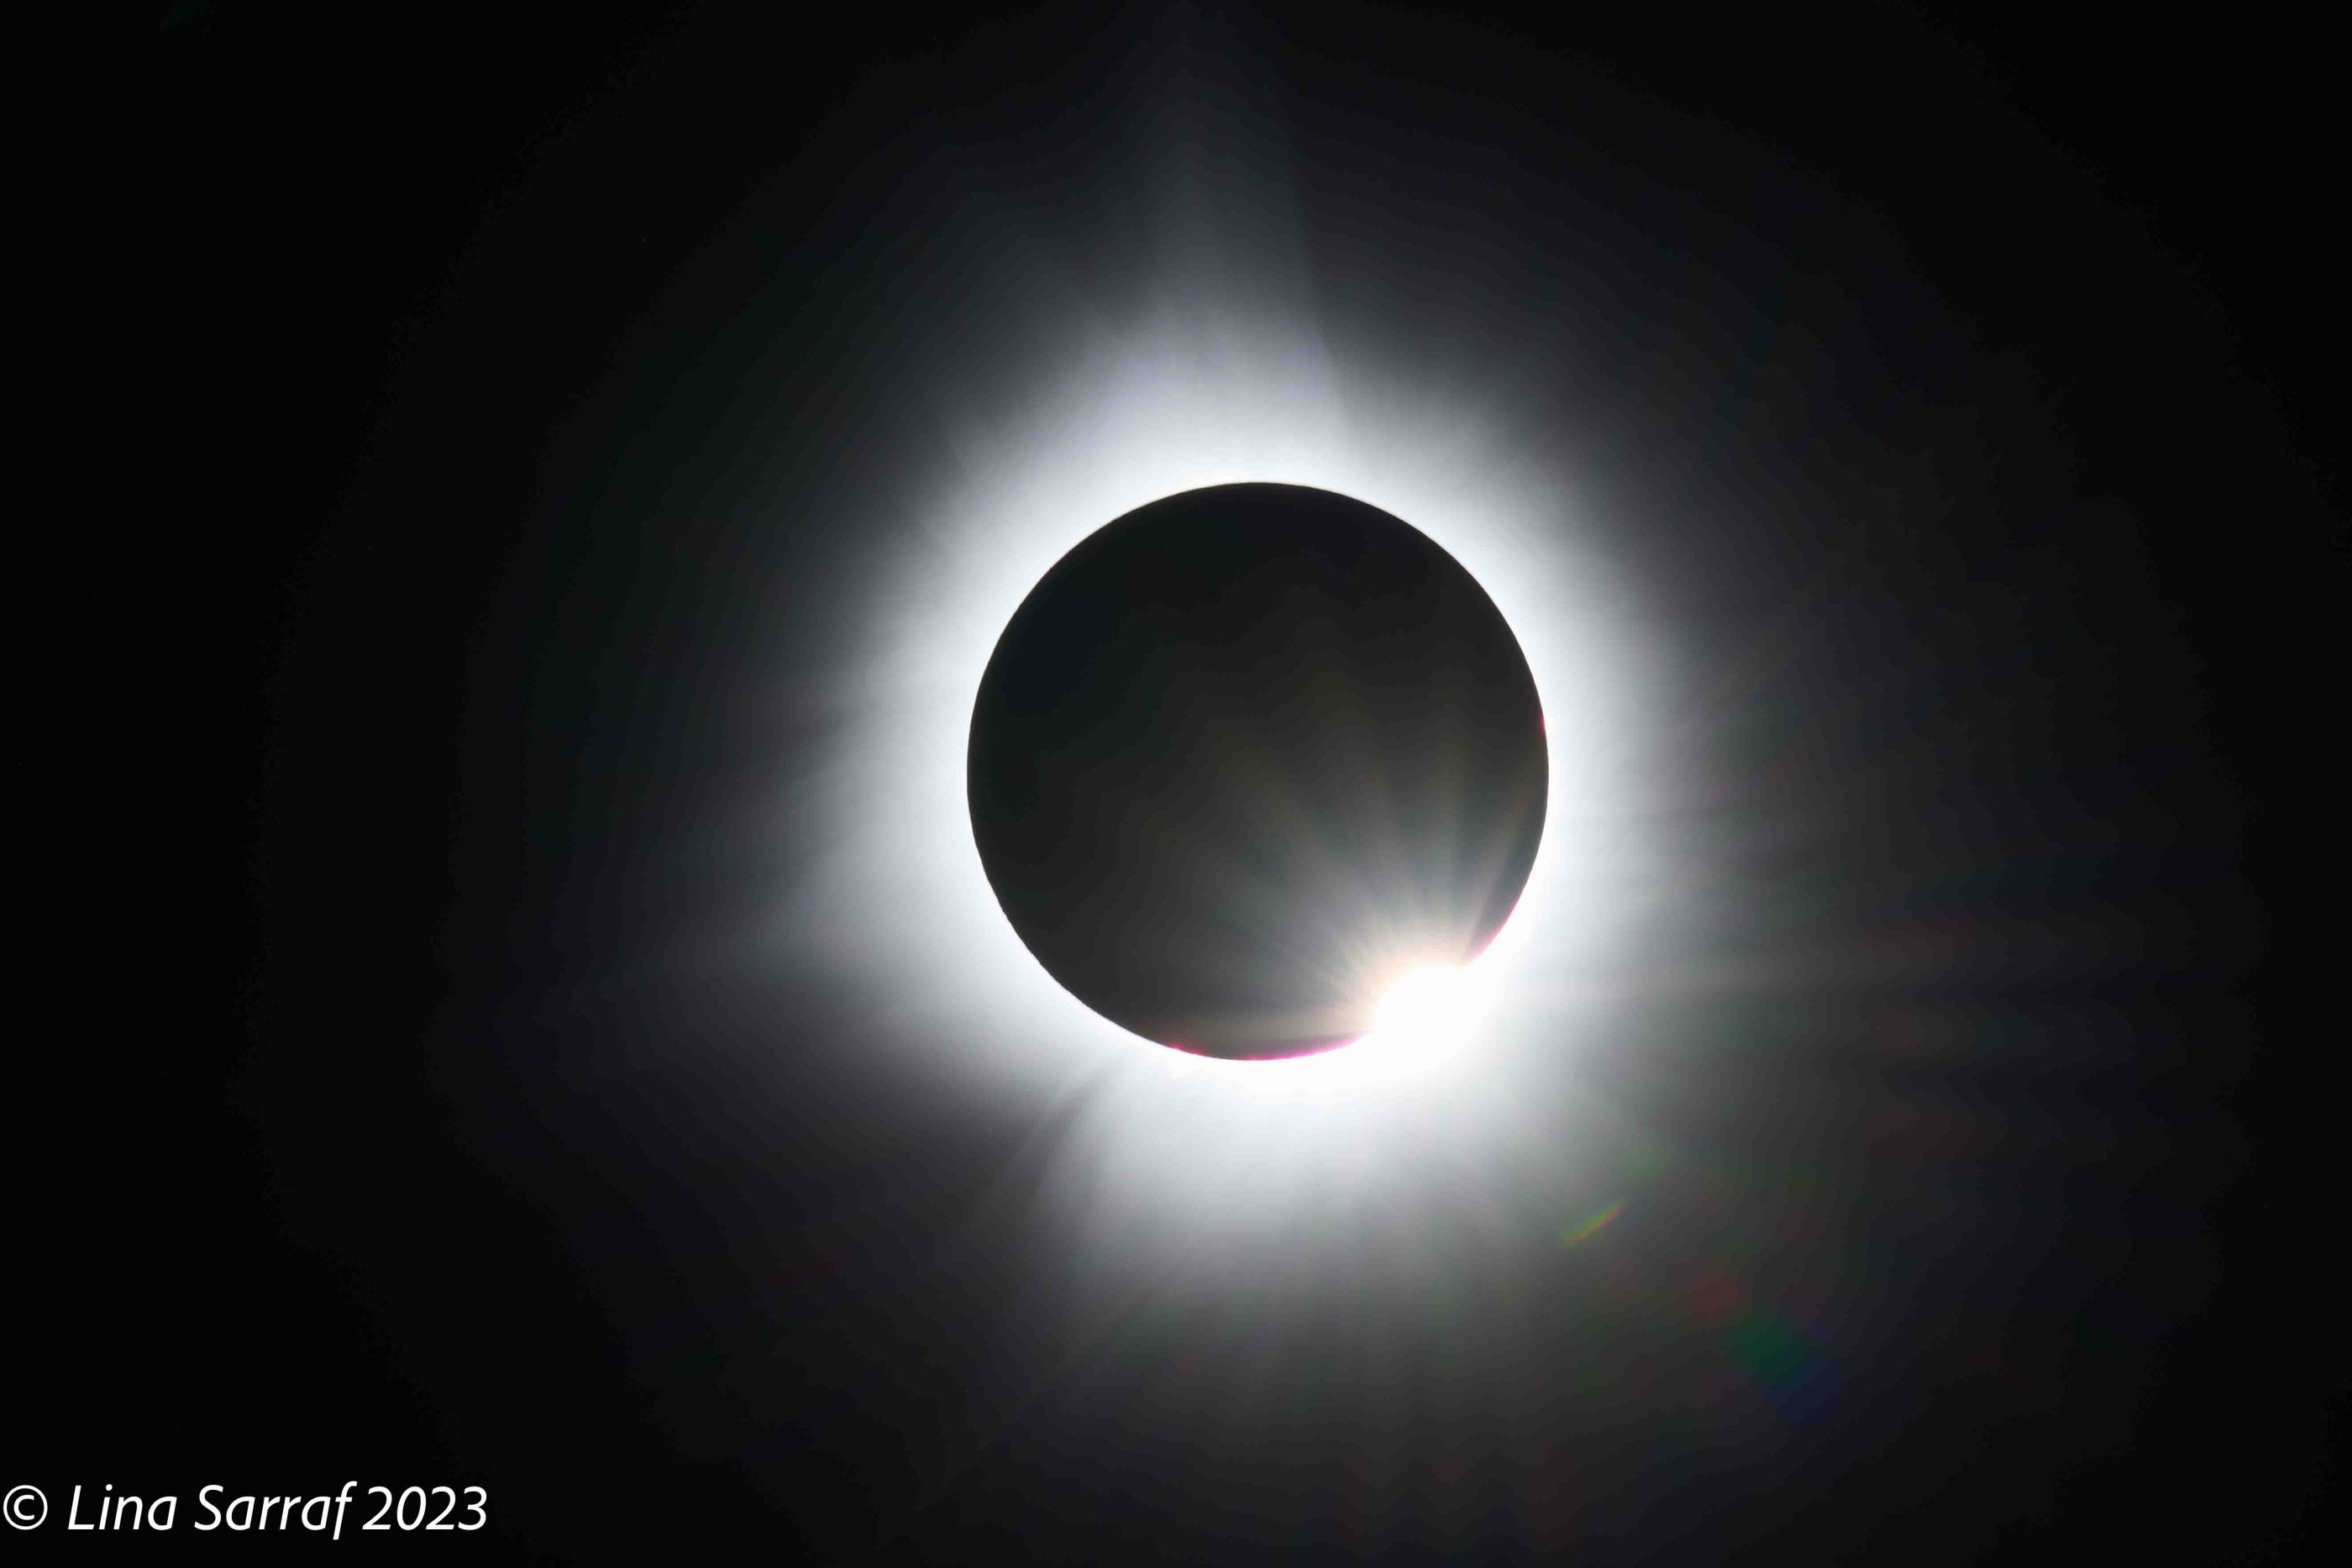  eclipse-10.jpg